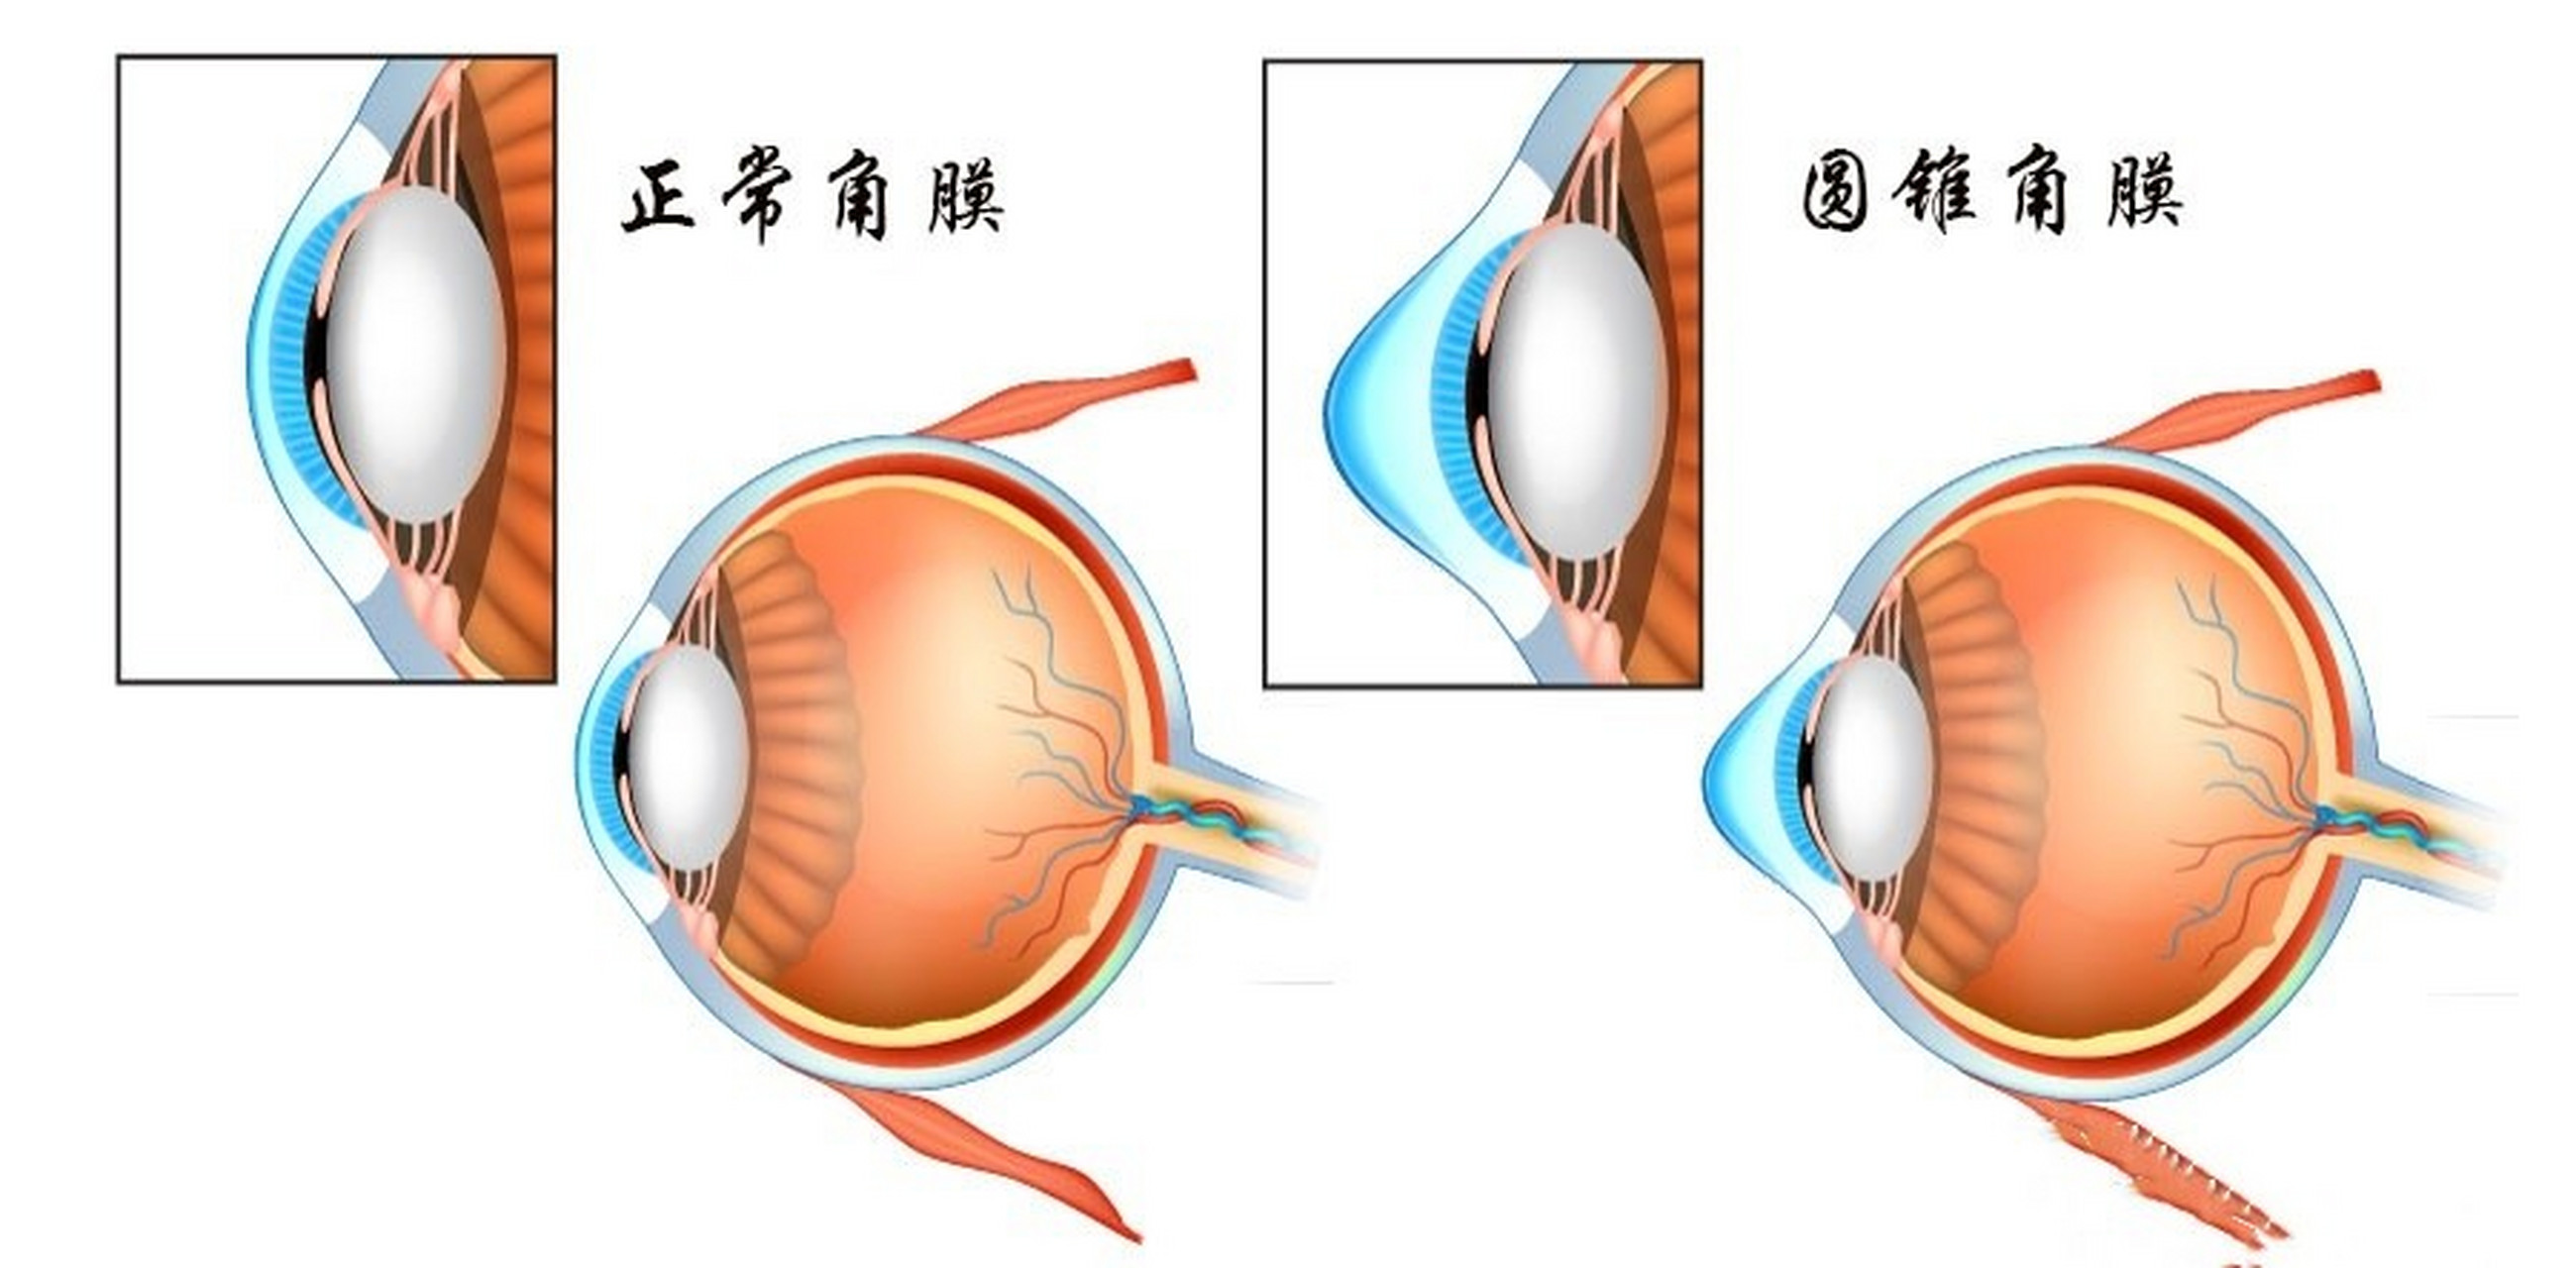 有人在知乎上问,近视手术会导致圆锥角膜吗?